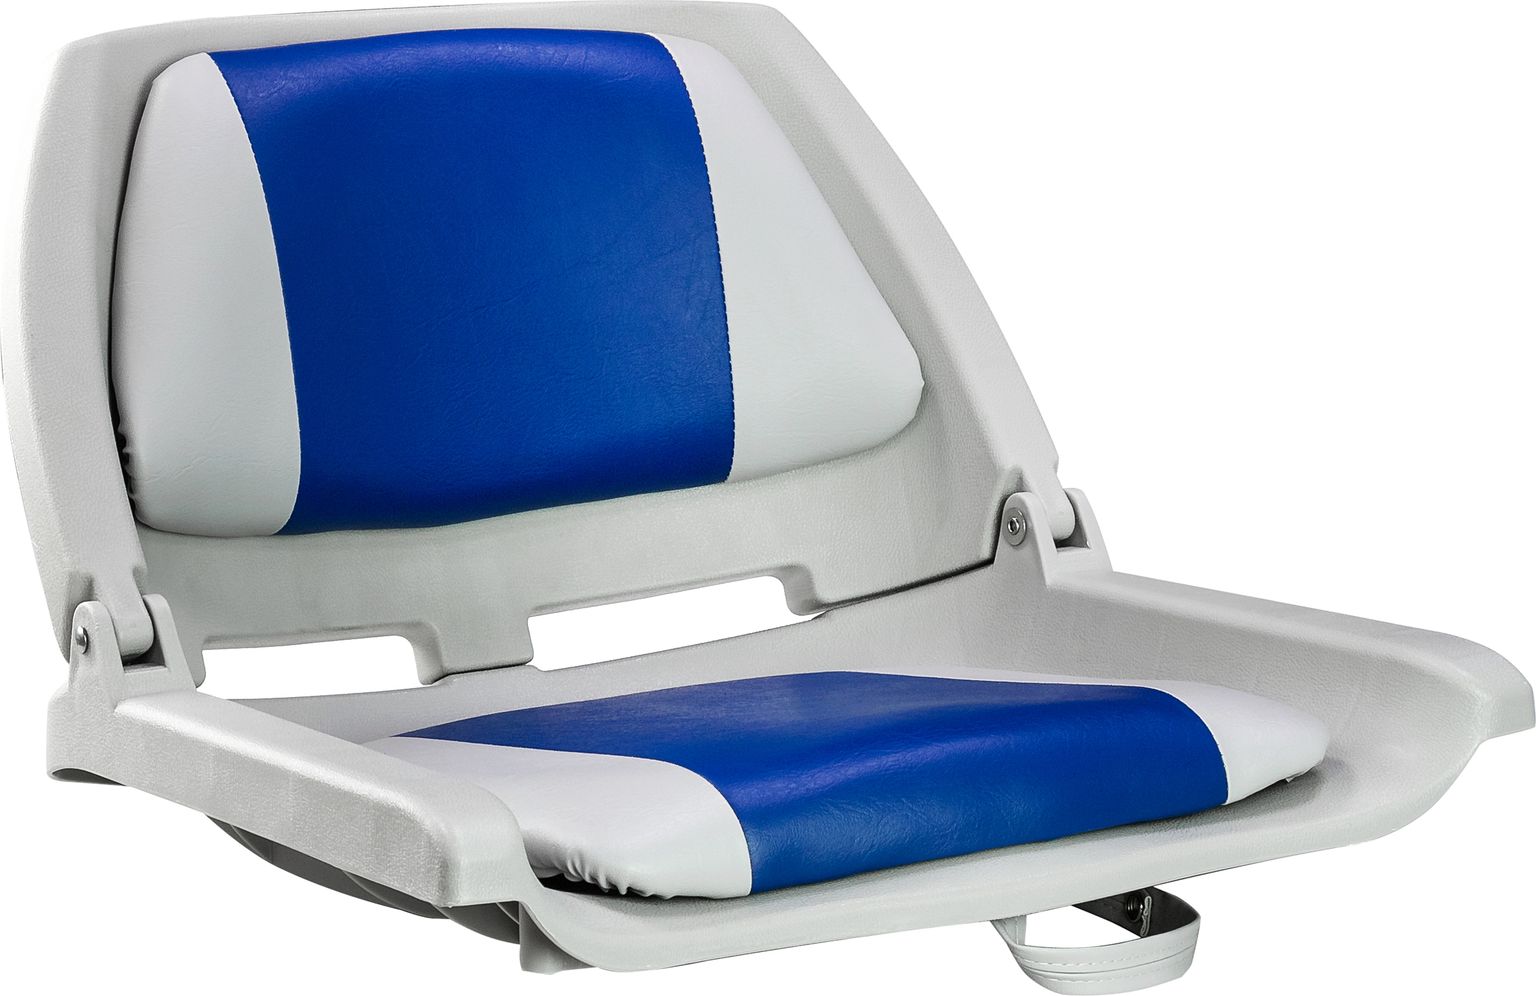 Кресло мягкое складное, обивка винил, цвет серый/синий, Marine Rocket 75109GB-MR фен nobrand 13 1600 вт серый синий